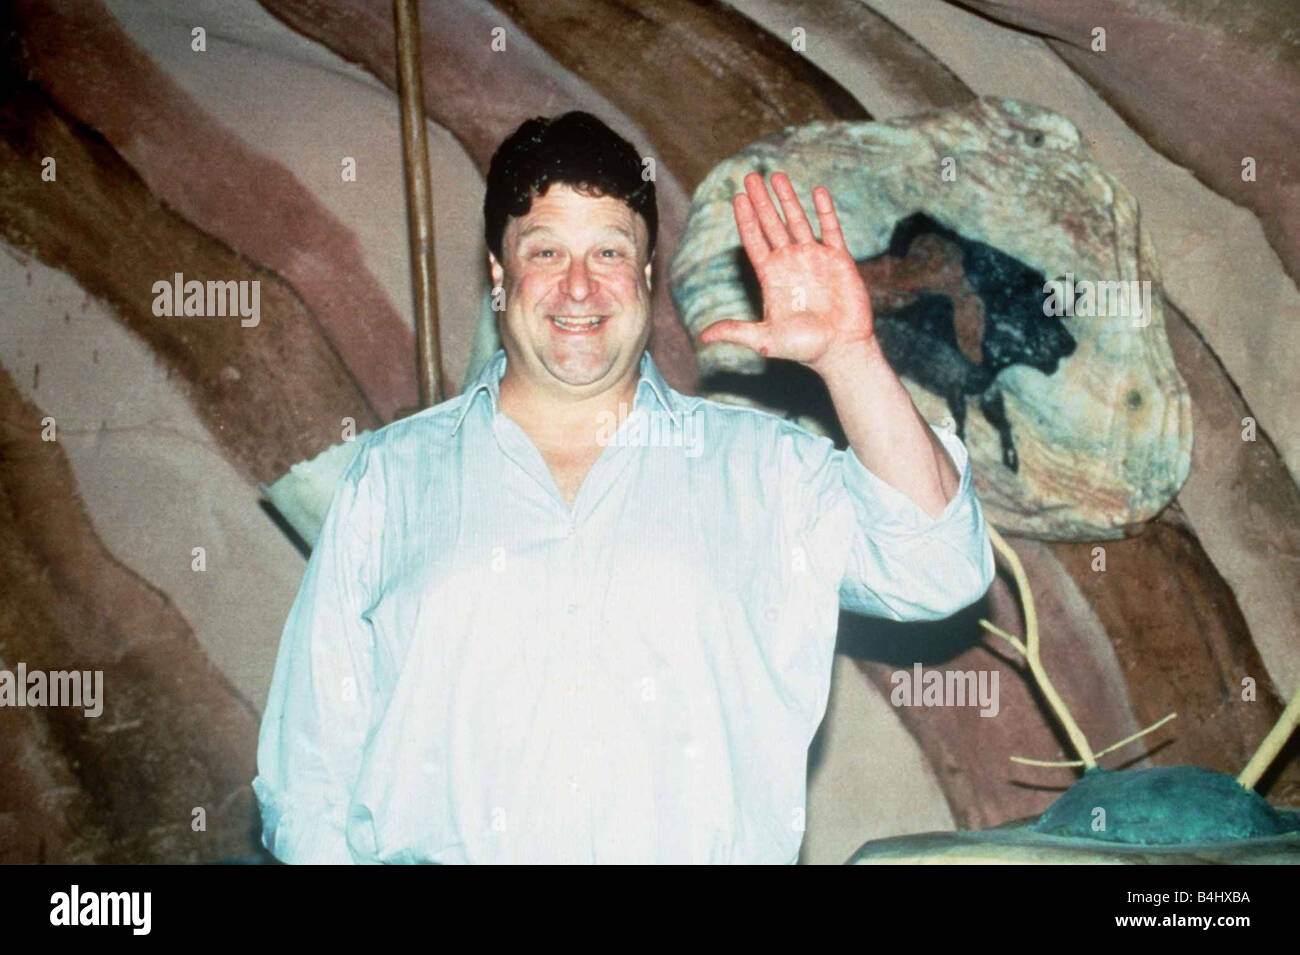 John Goodman actor en el set de la película Los Picapiedra 1994 Foto de stock